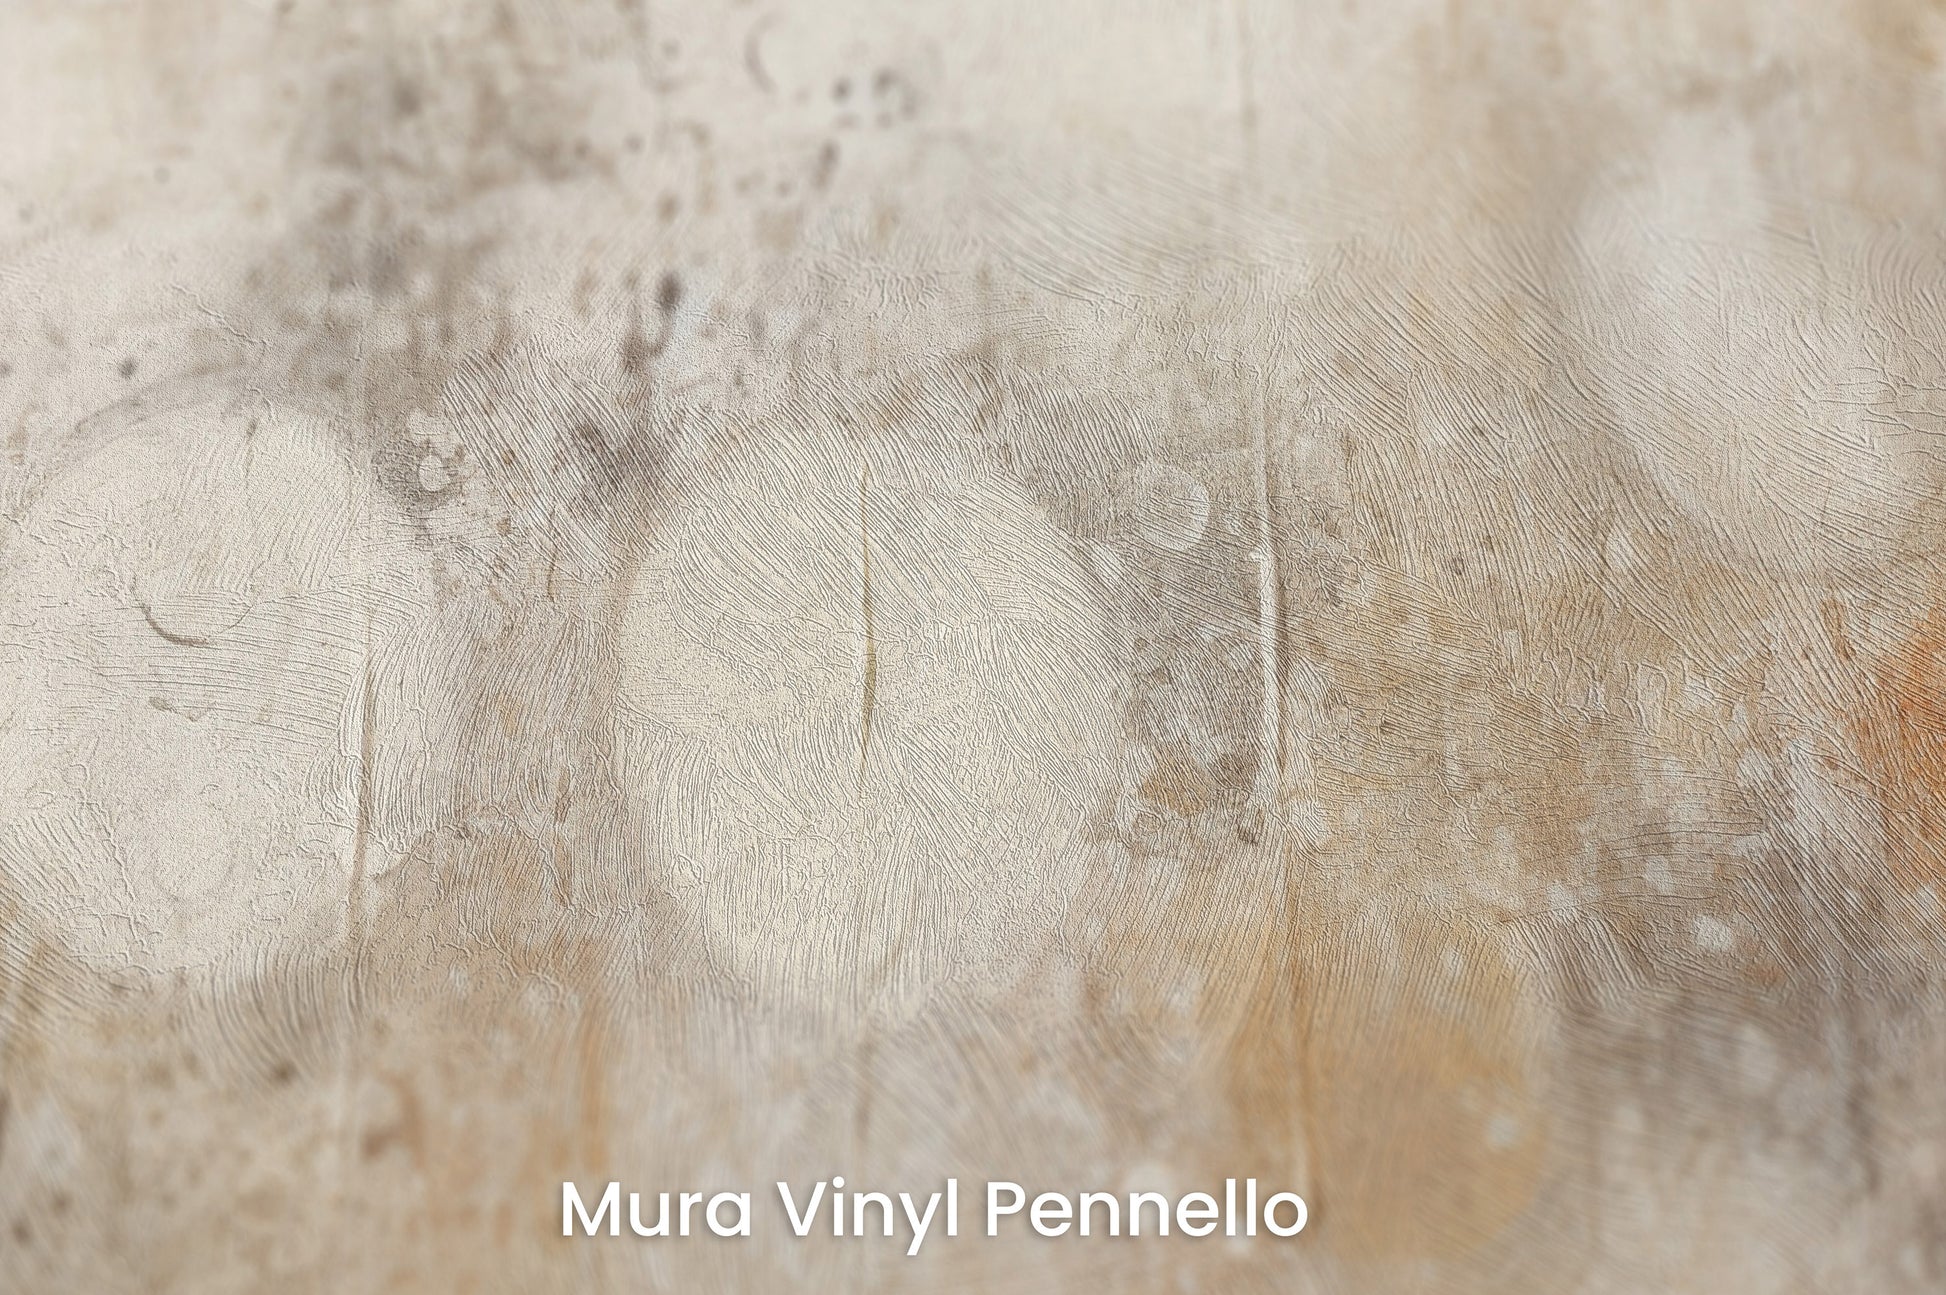 Zbliżenie na artystyczną fototapetę o nazwie ETHER REALM SPHERES na podłożu Mura Vinyl Pennello - faktura pociągnięć pędzla malarskiego.